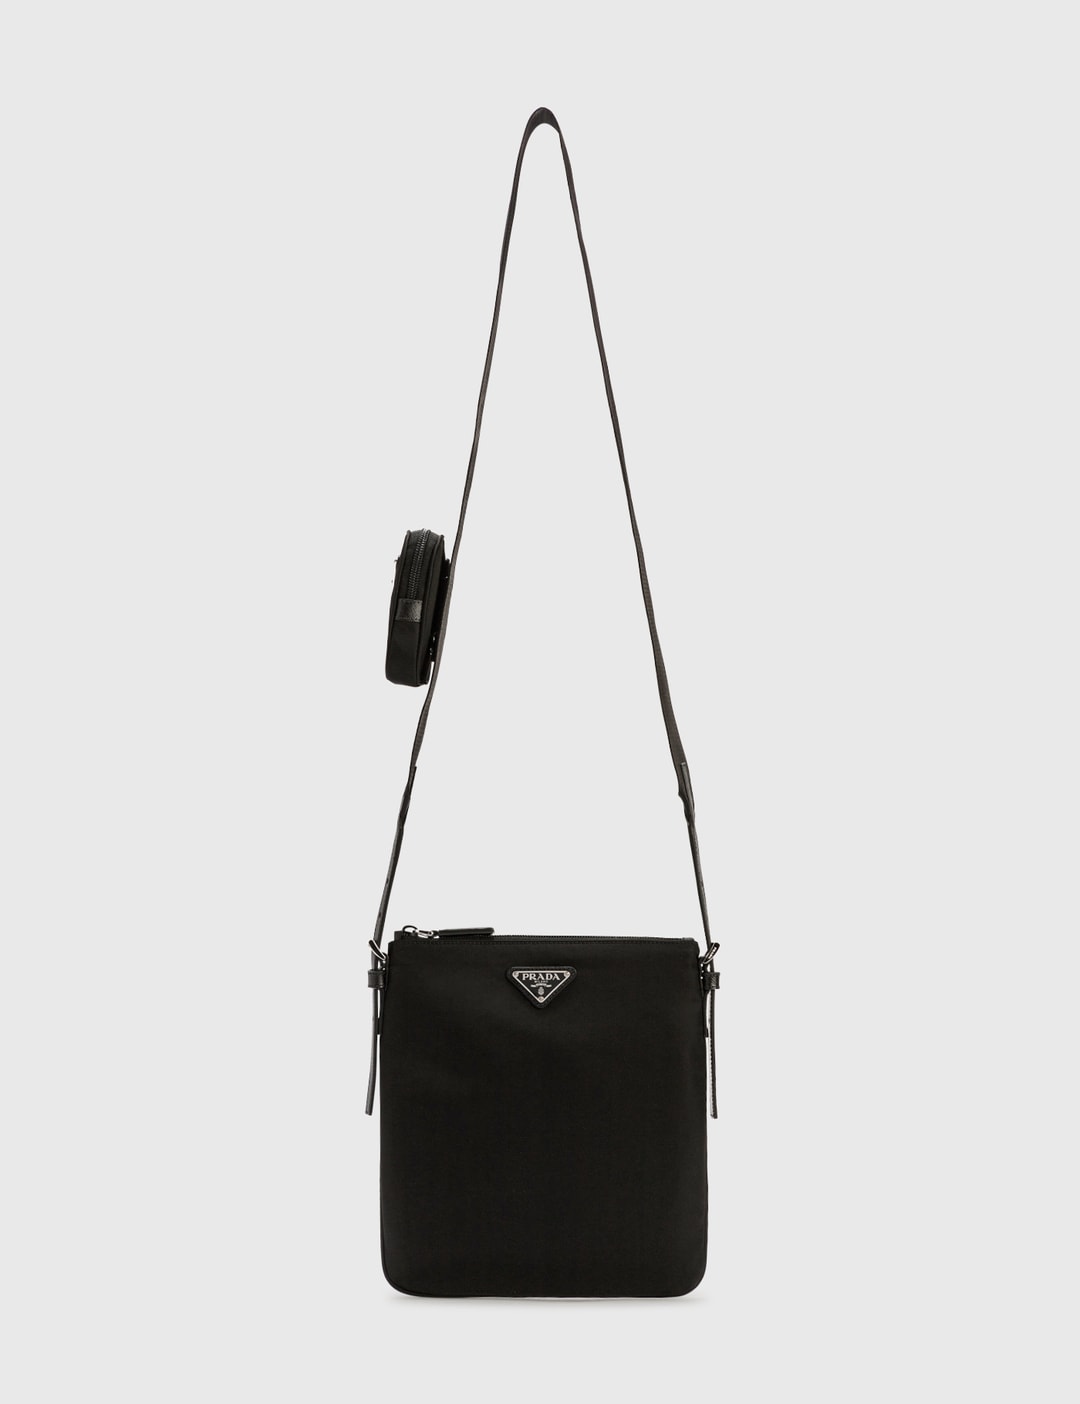 Prada - Saffiano Mini Bag  HBX - Globally Curated Fashion and